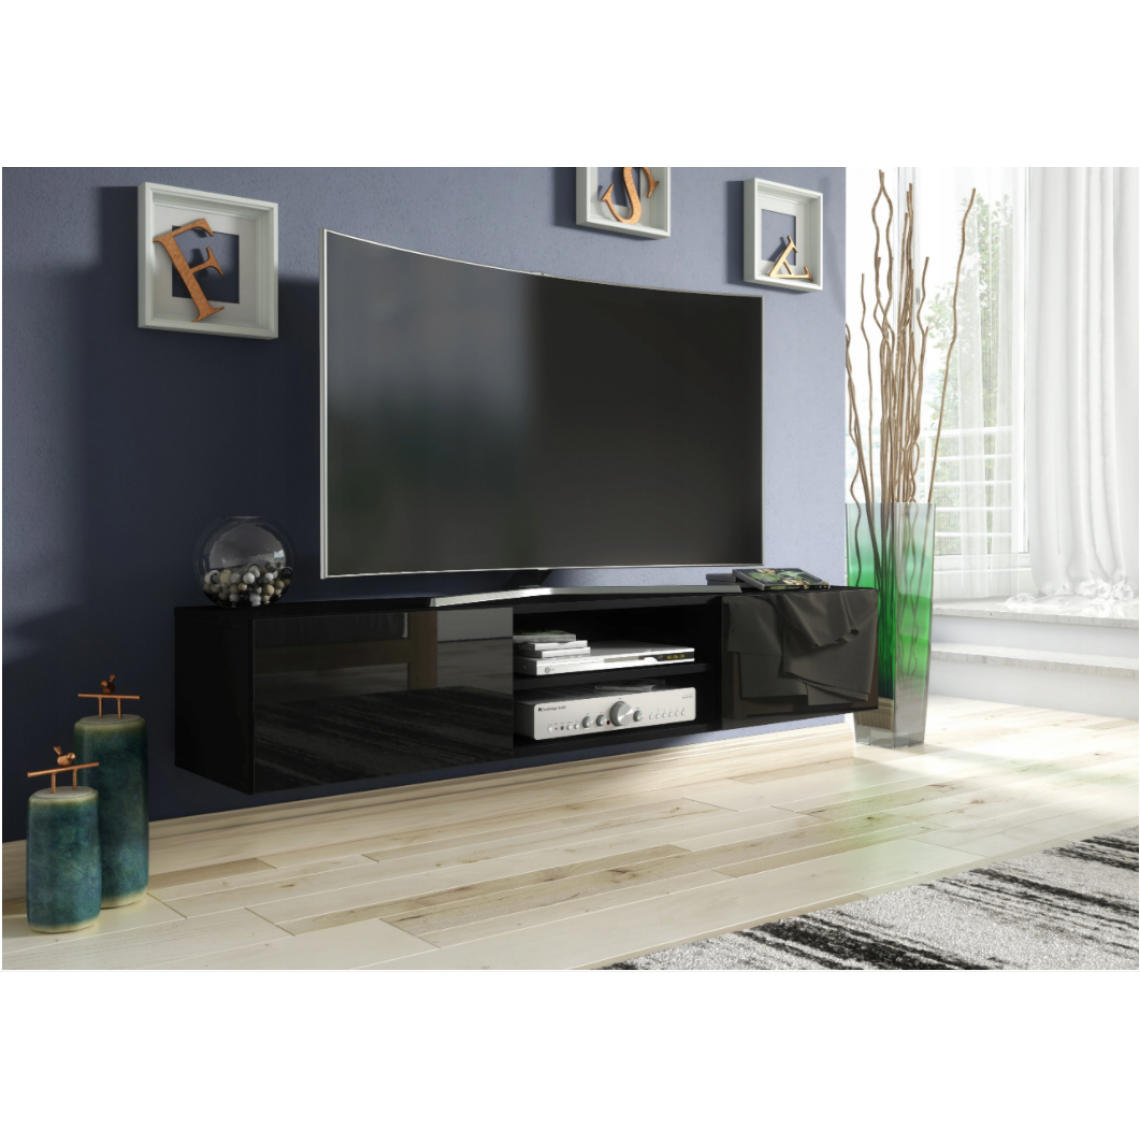 3xeliving - 3xEliving Meuble TV avec rangement Demi 2 15 160 cm Noir / Noir Brillant, Largeur: 160cm, Profondeur: 35cm, Hauteur: 30 cm. - Meubles TV, Hi-Fi